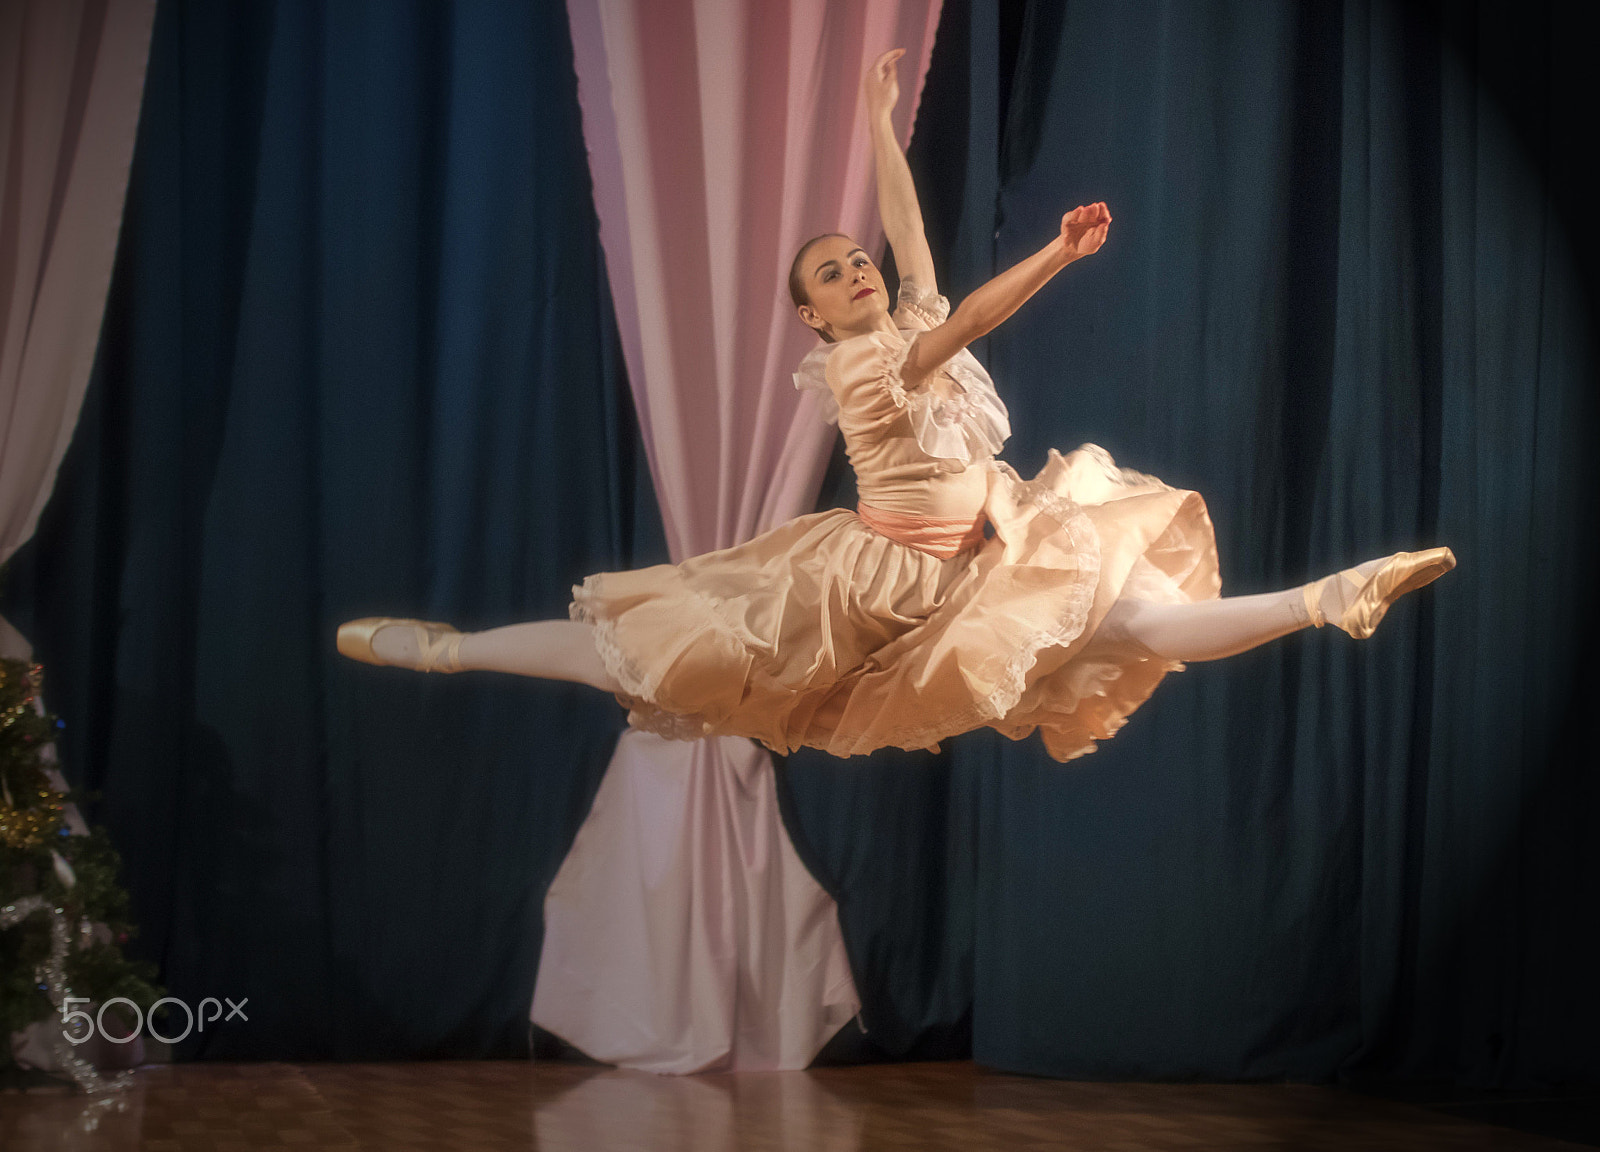 Canon EOS 80D sample photo. Balletdancer photography